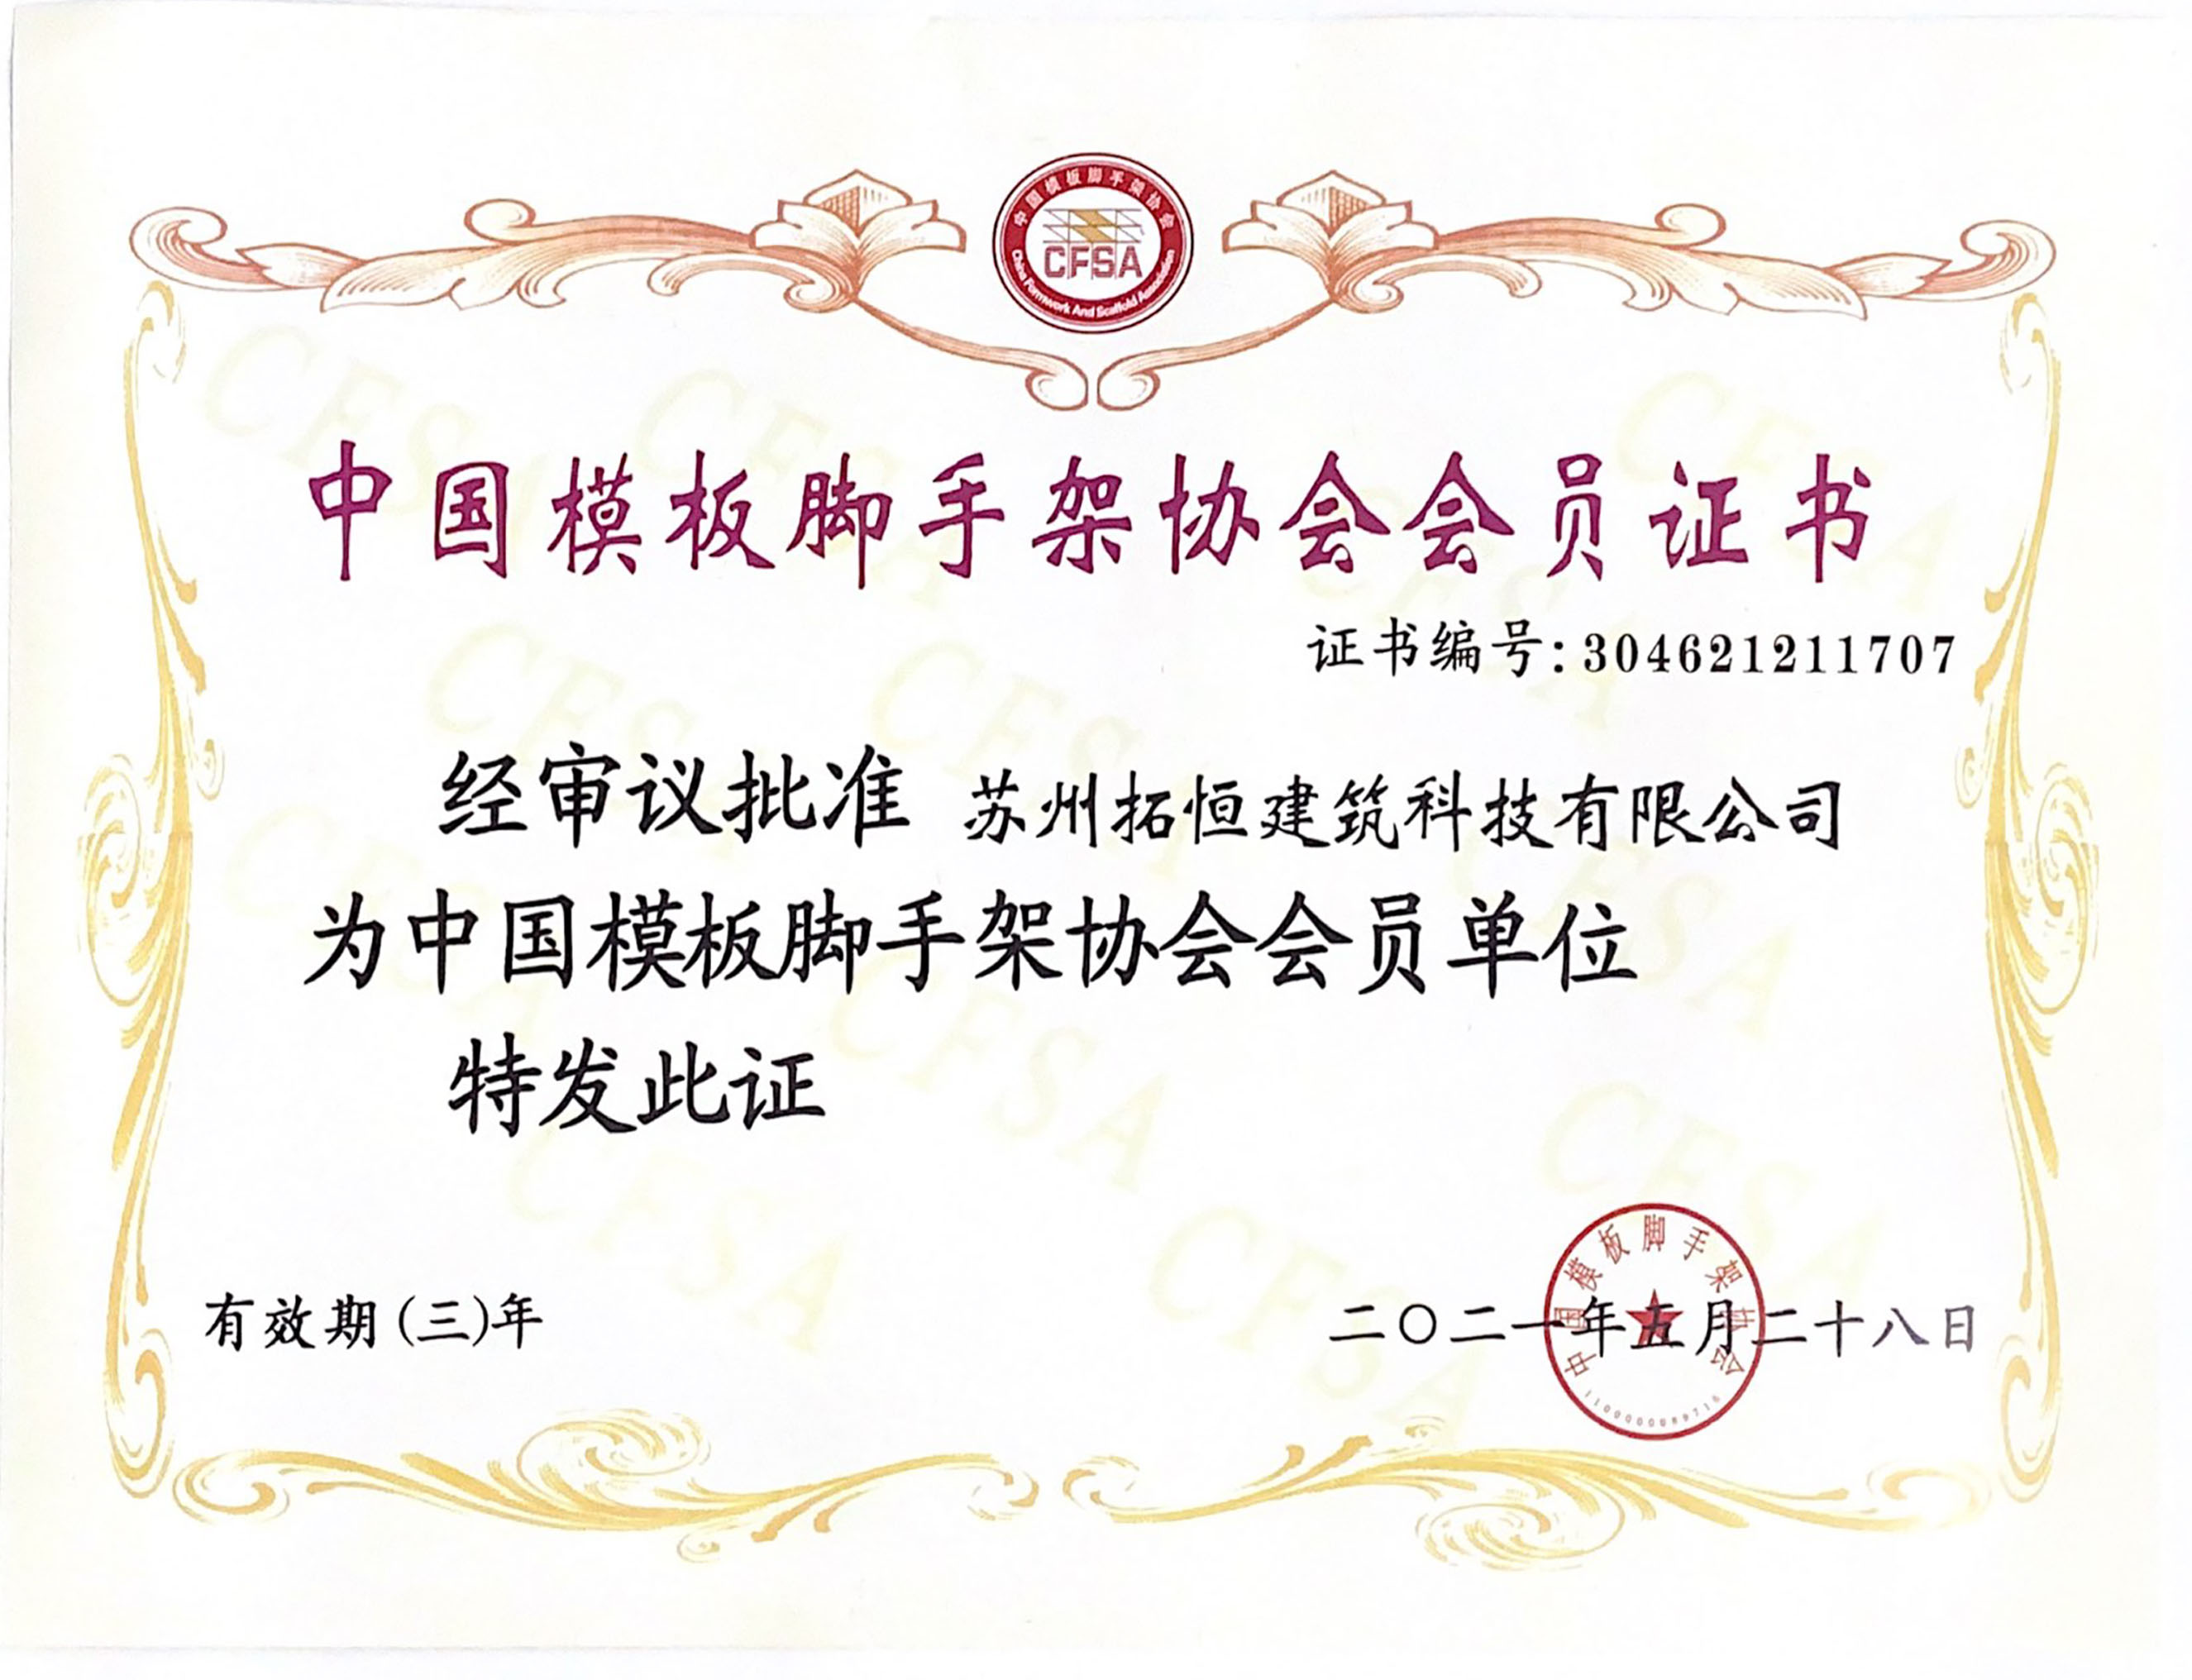 Certificat de membre de la China Template échafaudage Association